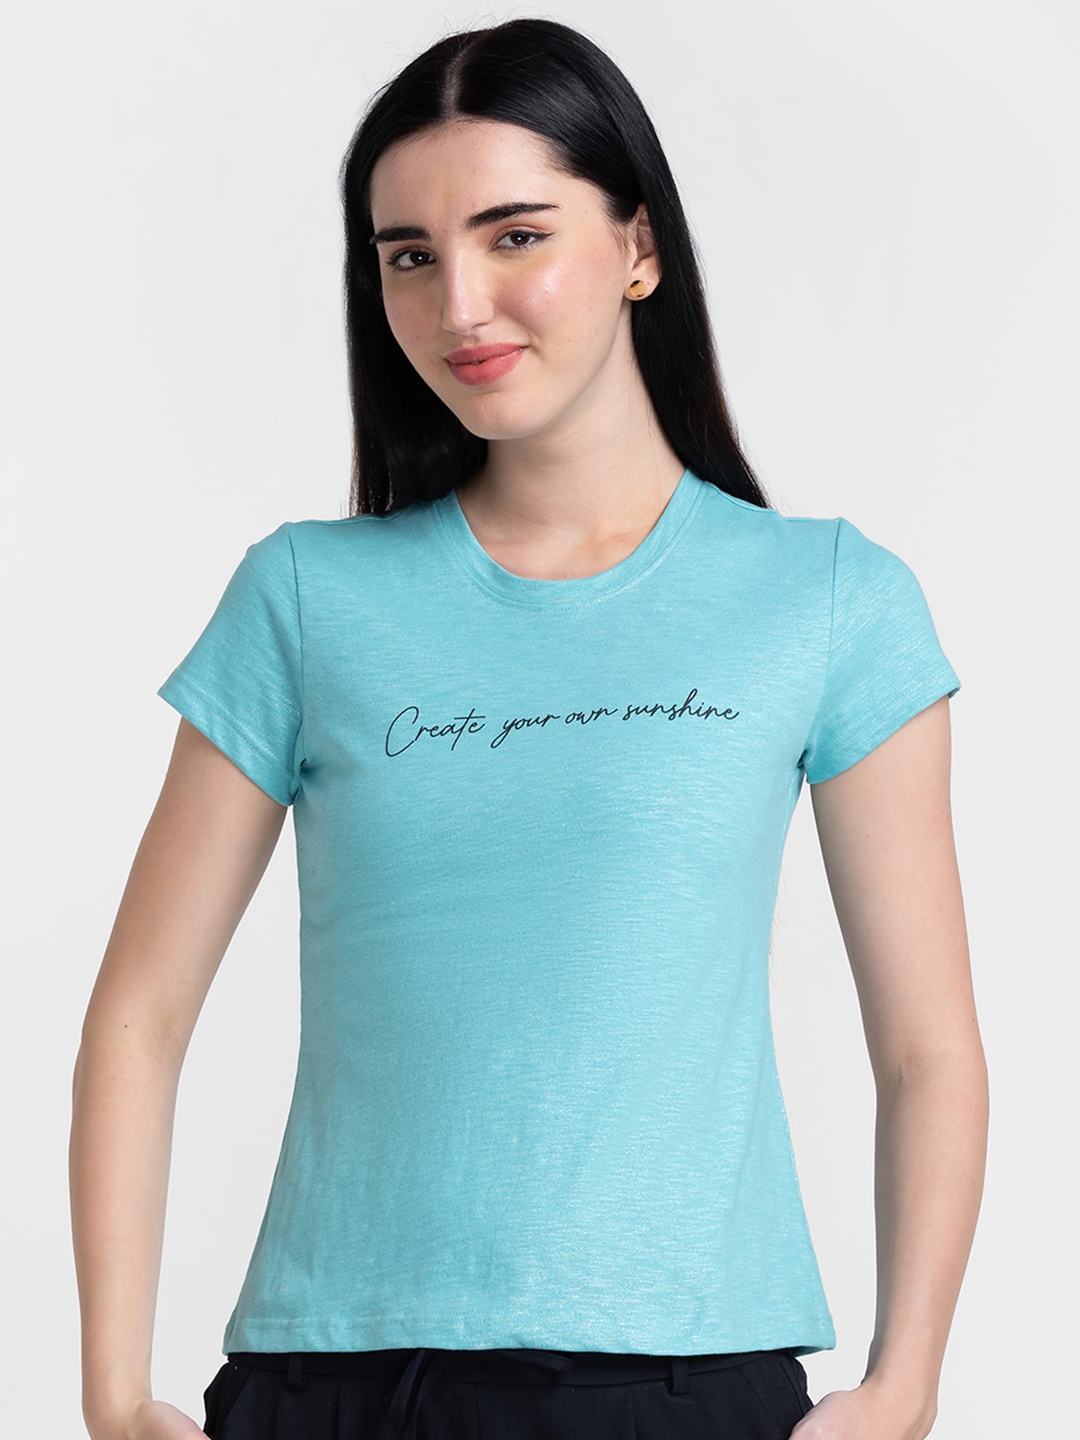 Globus Aqua Printed Tshirt